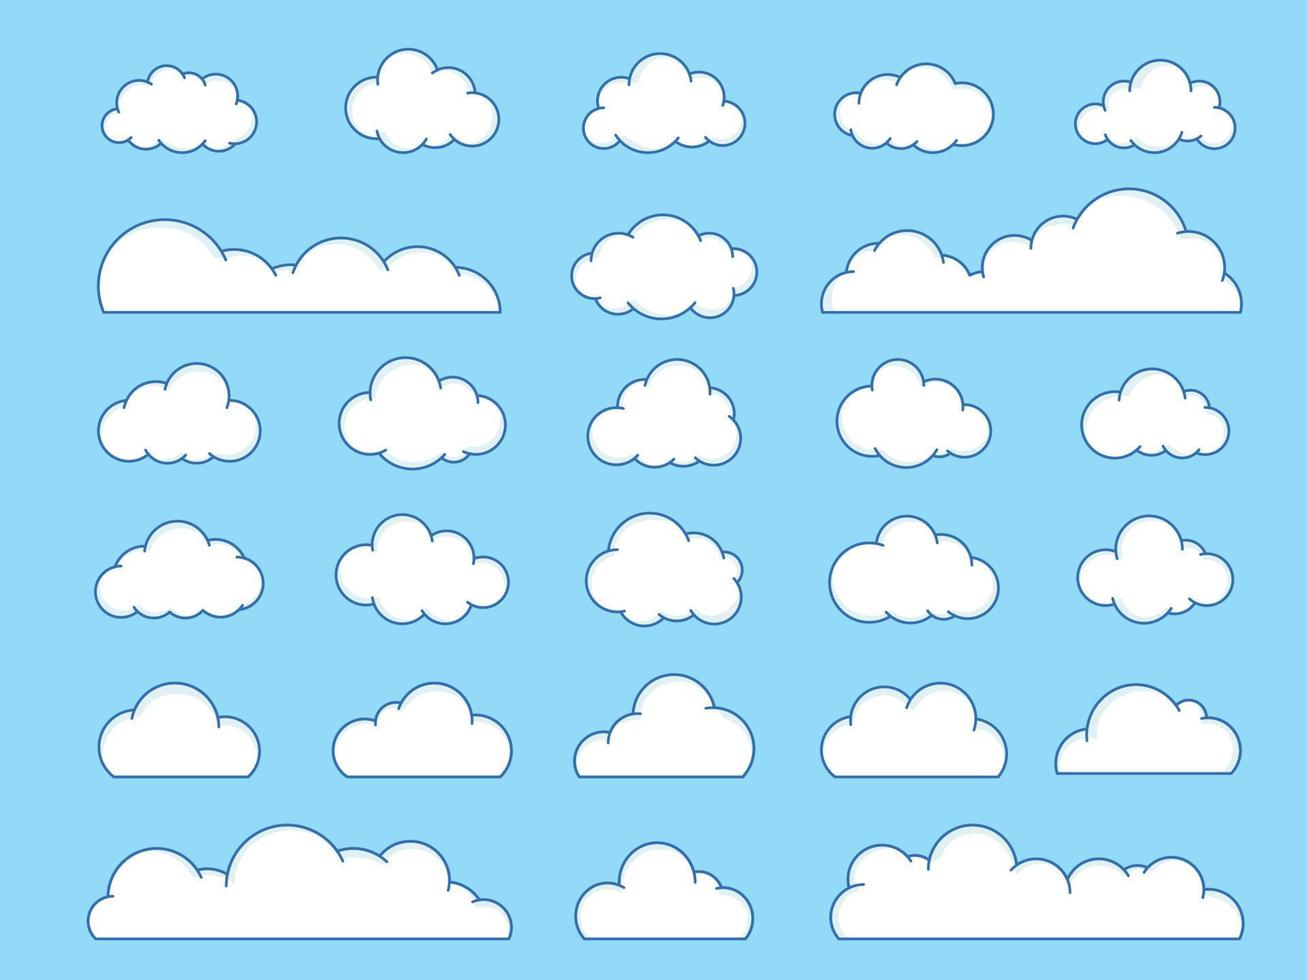 Karikatur Wolken Freiform und viele gestalten Wolken sind perfekt zum Ihre Dekoration vektor